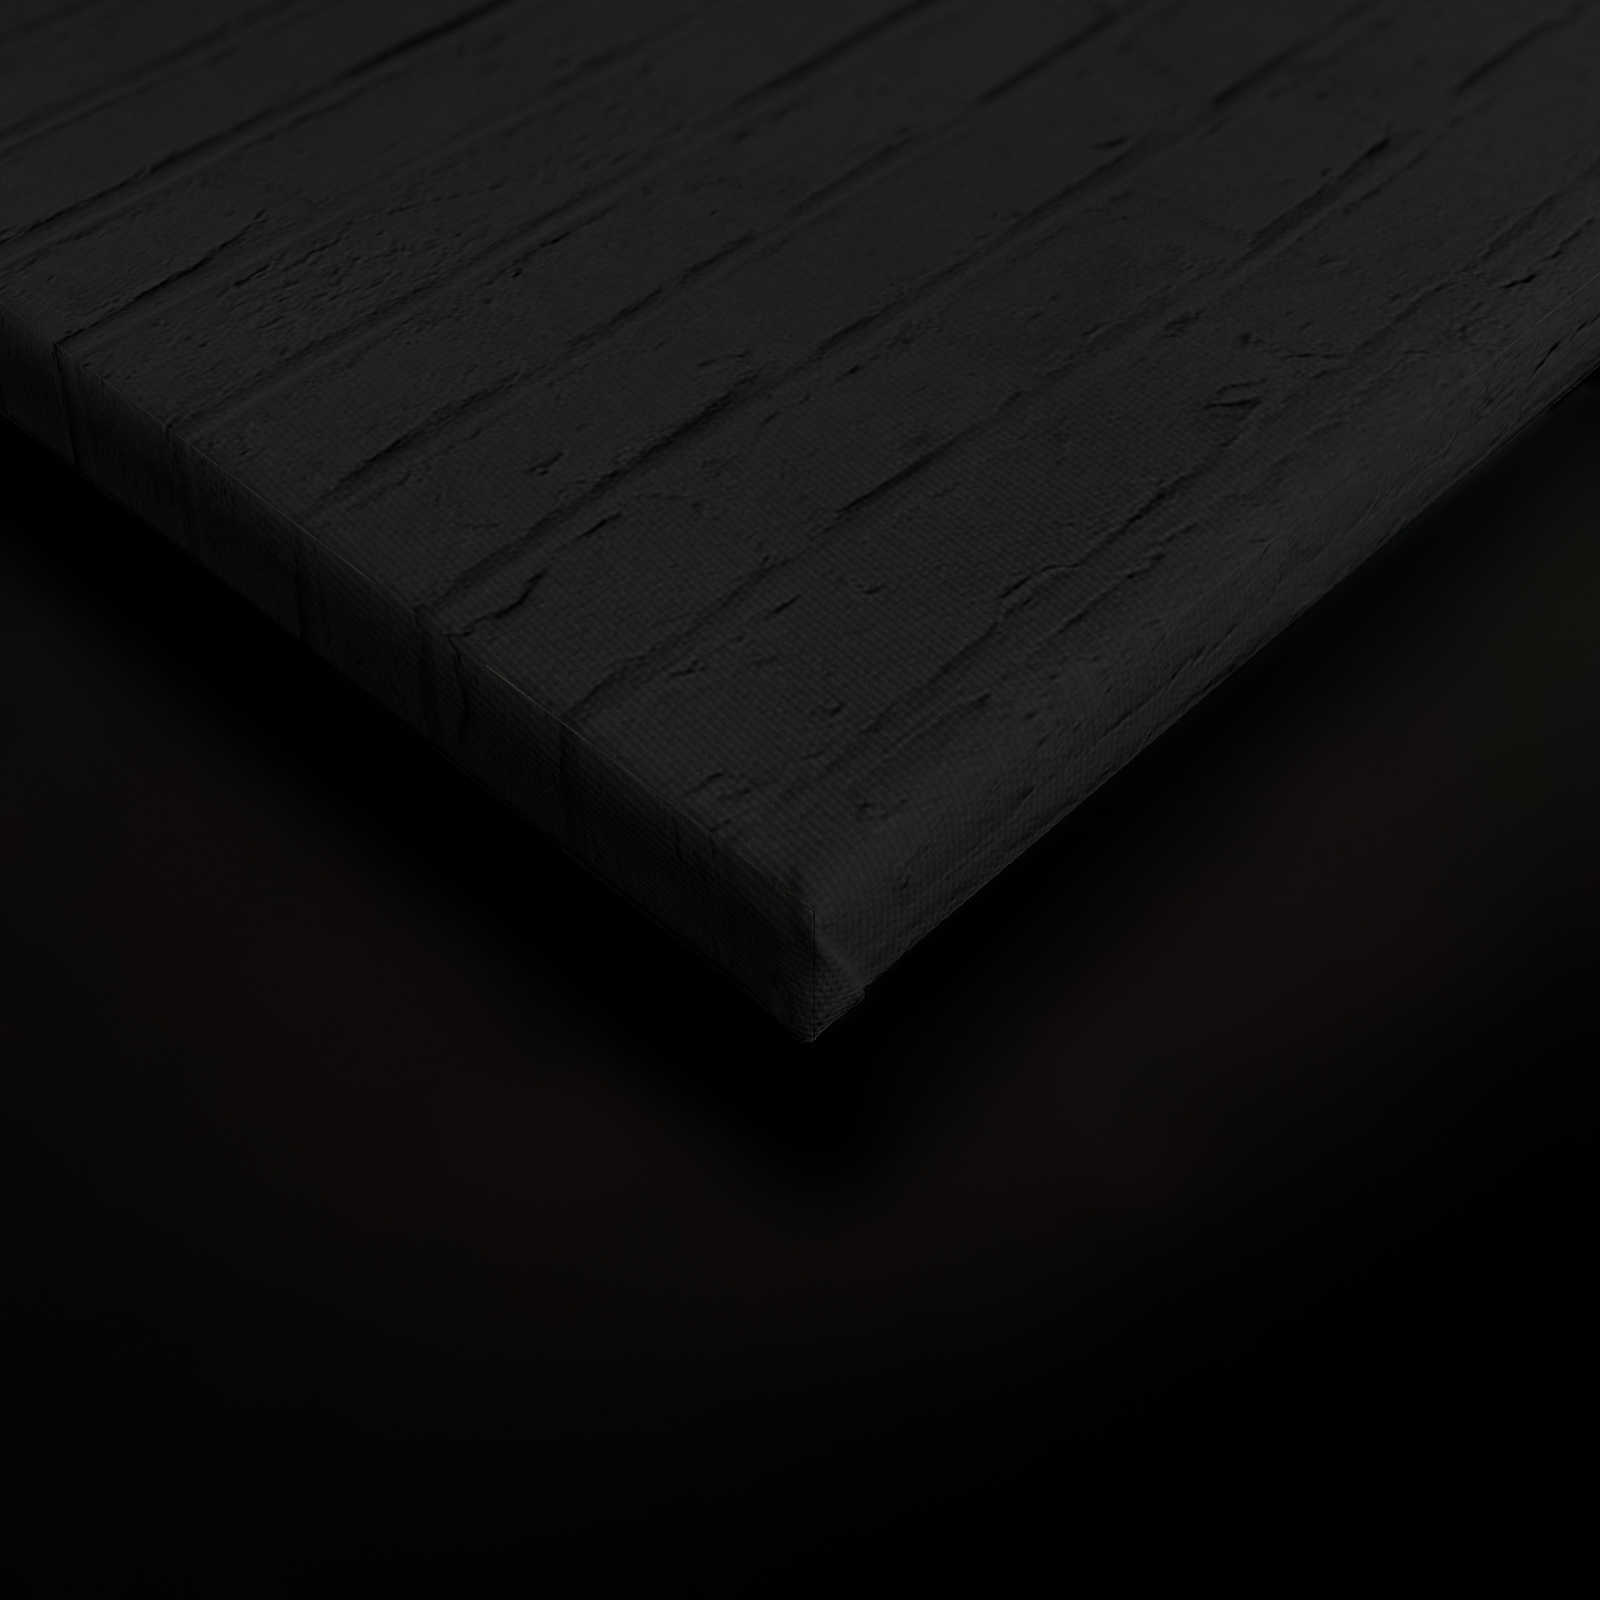             Toile noire Femme avec cocktail & maçonnerie - 1,20 m x 0,80 m
        